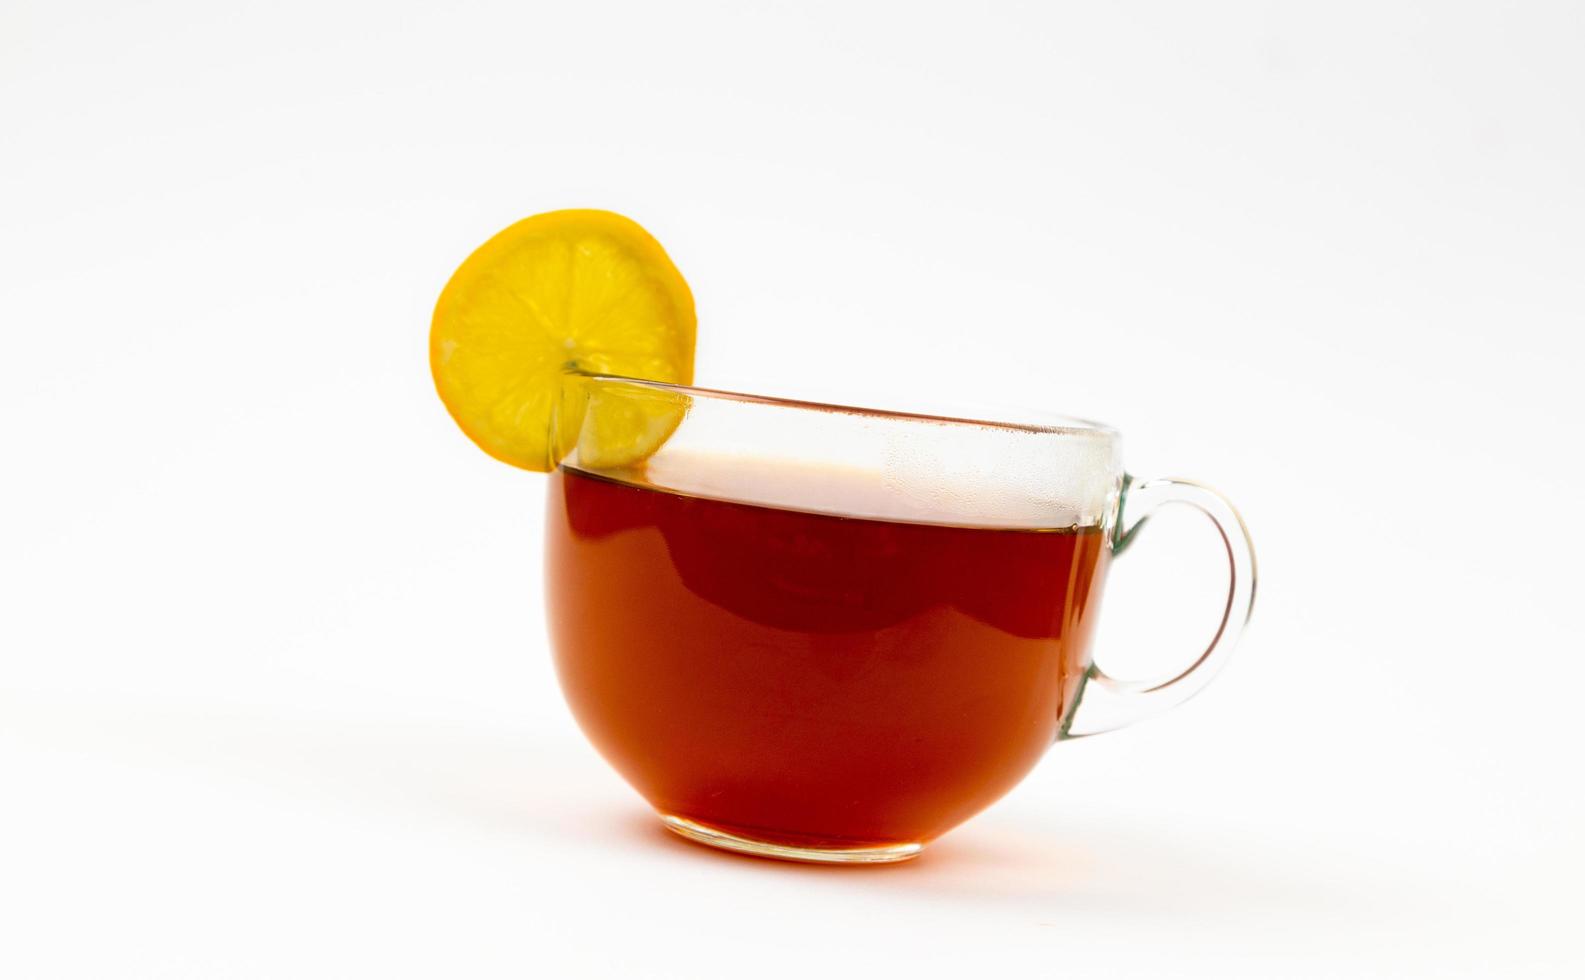 chá na xícara com folhas de hortelã e limão isolado no fundo branco foto